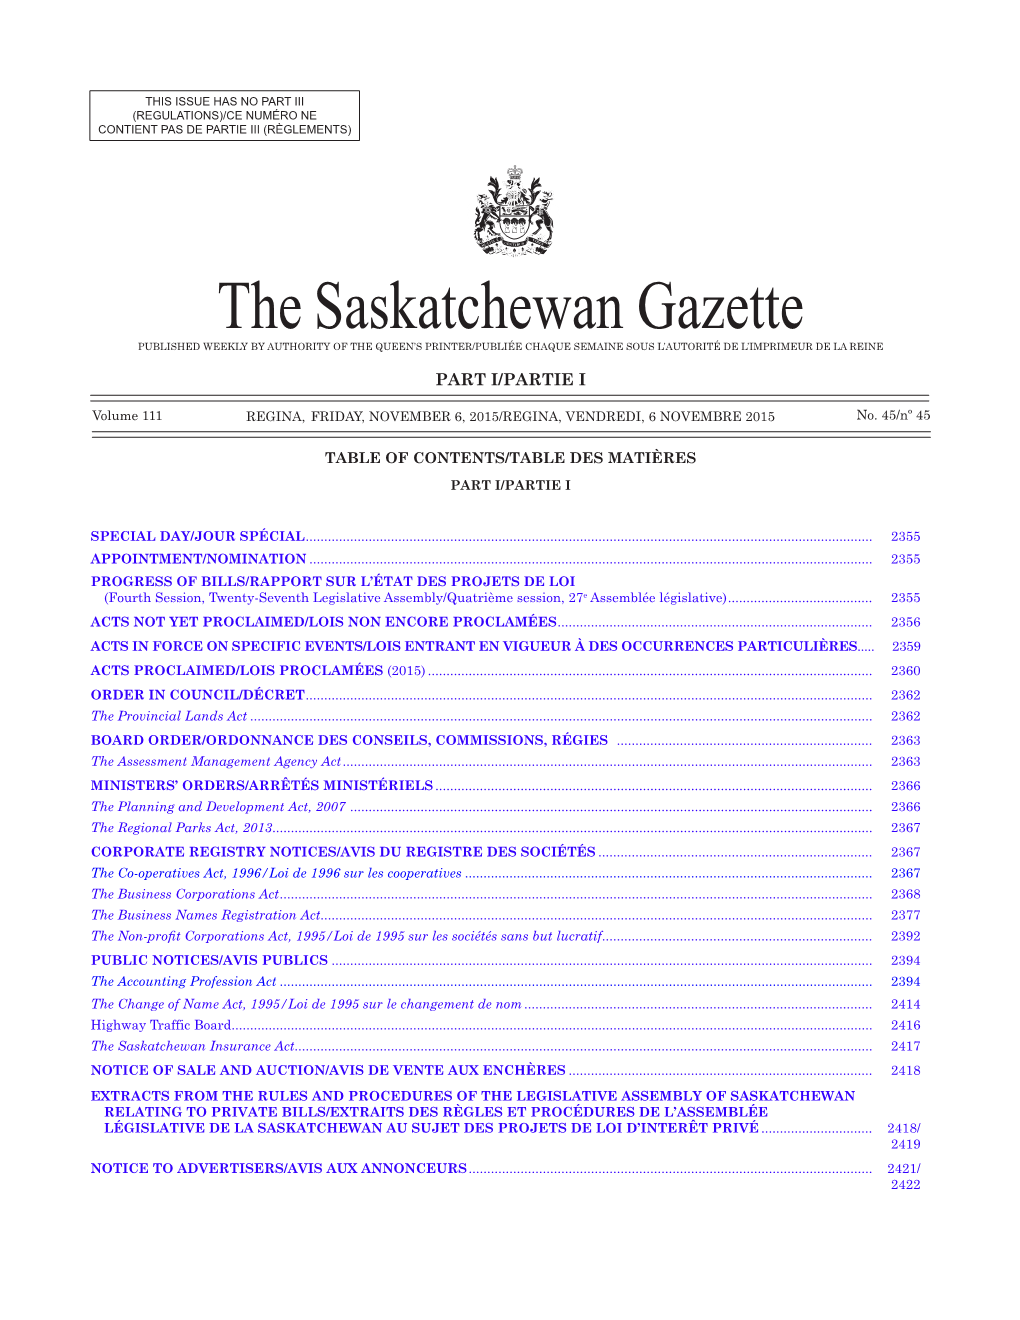 The Saskatchewan Gazette, November 6, 2015 2353 (Regulations)/Ce Numéro Ne Contient Pas De Partie Iii (Règlements)